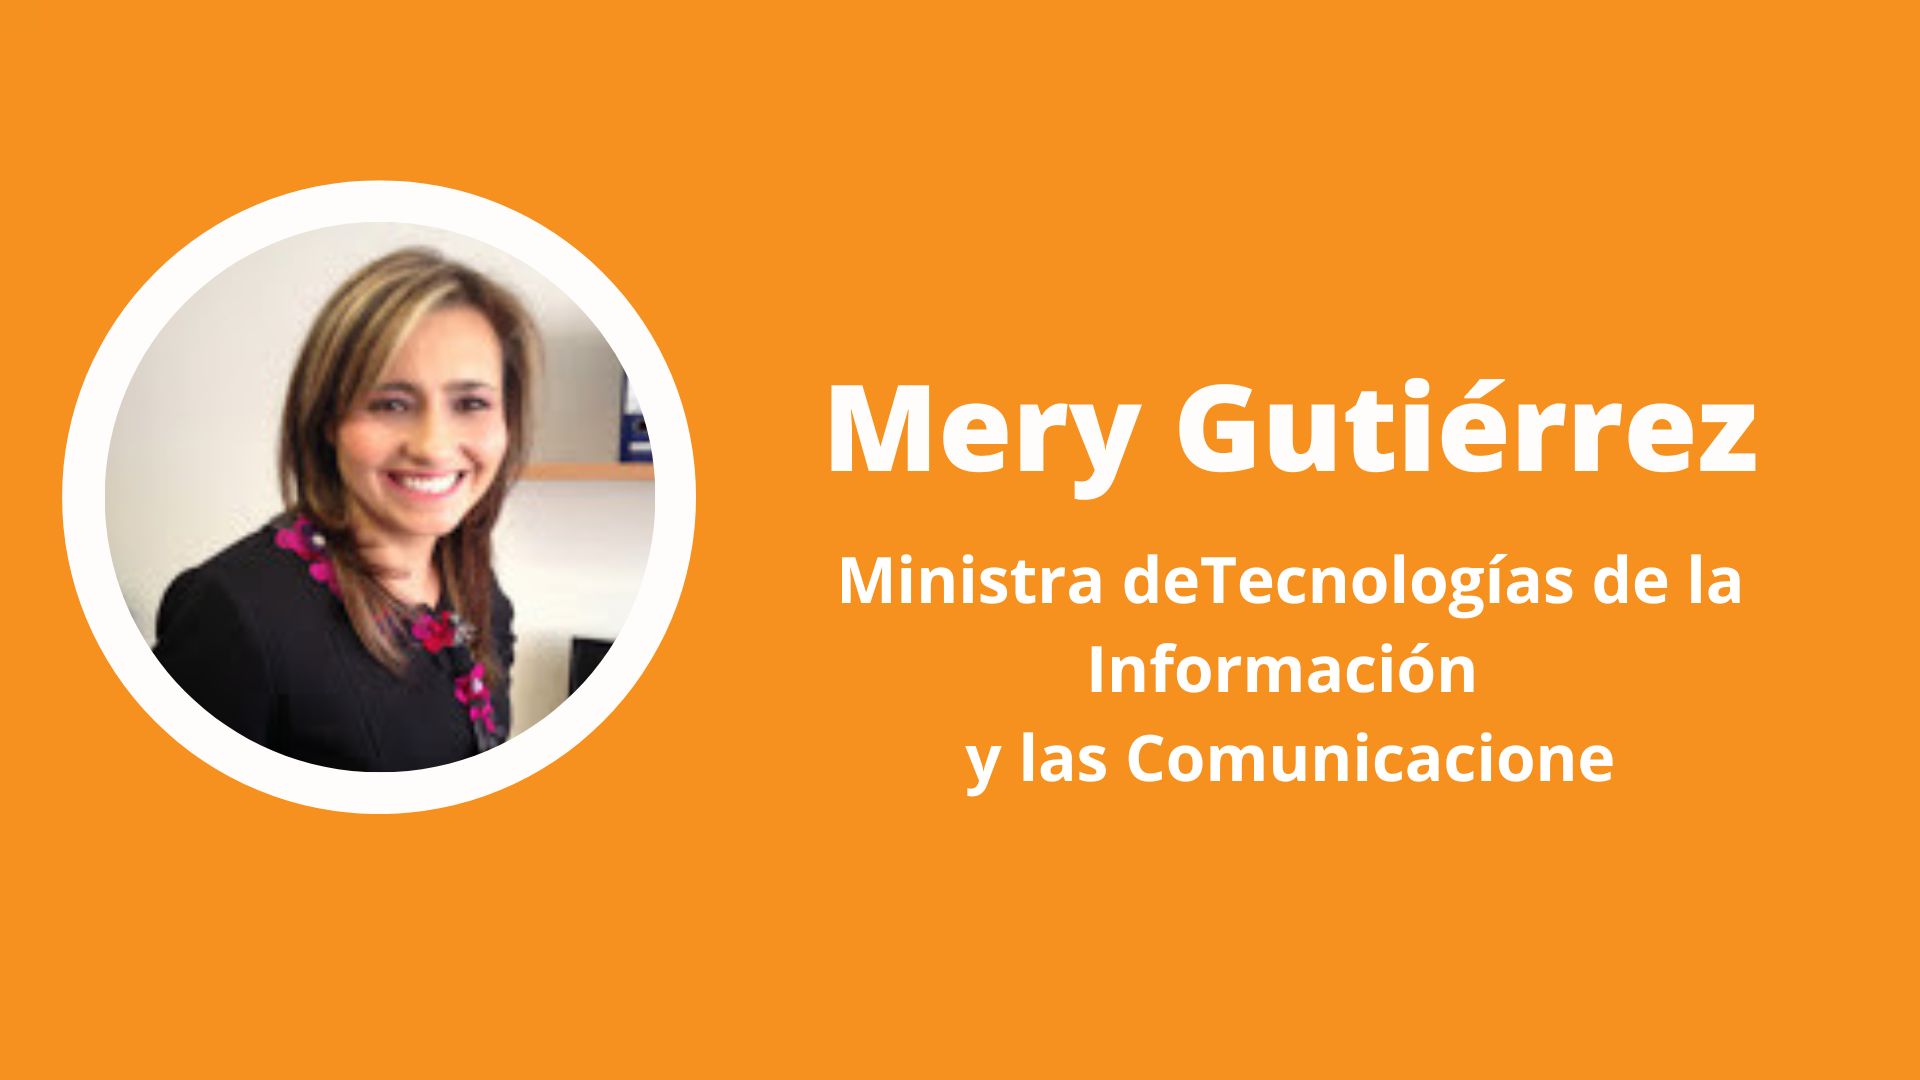 Mery Gutiérrez, la nueva ministra TIC, demandó a la nación por 45.000 millones de pesos